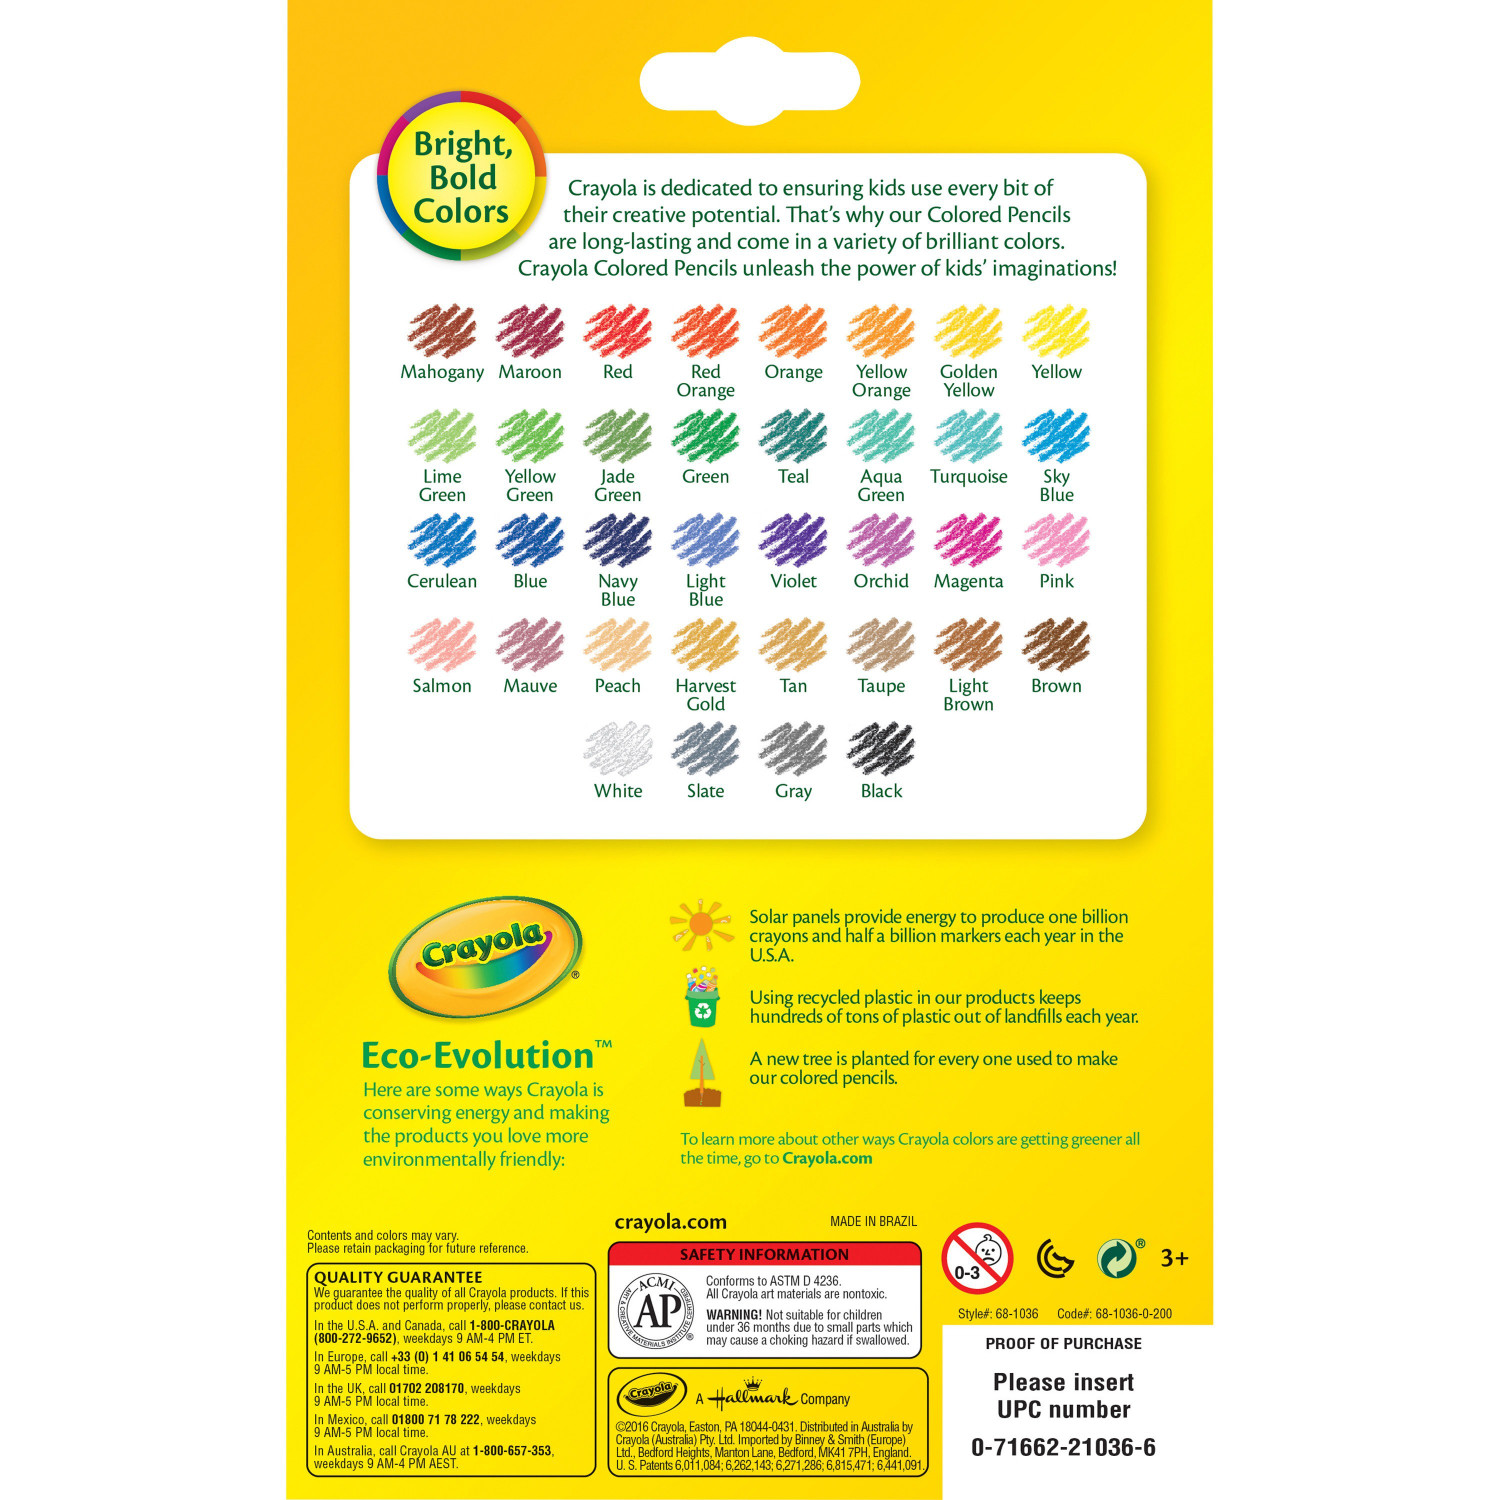 Crayola Pastel Colored Pencils